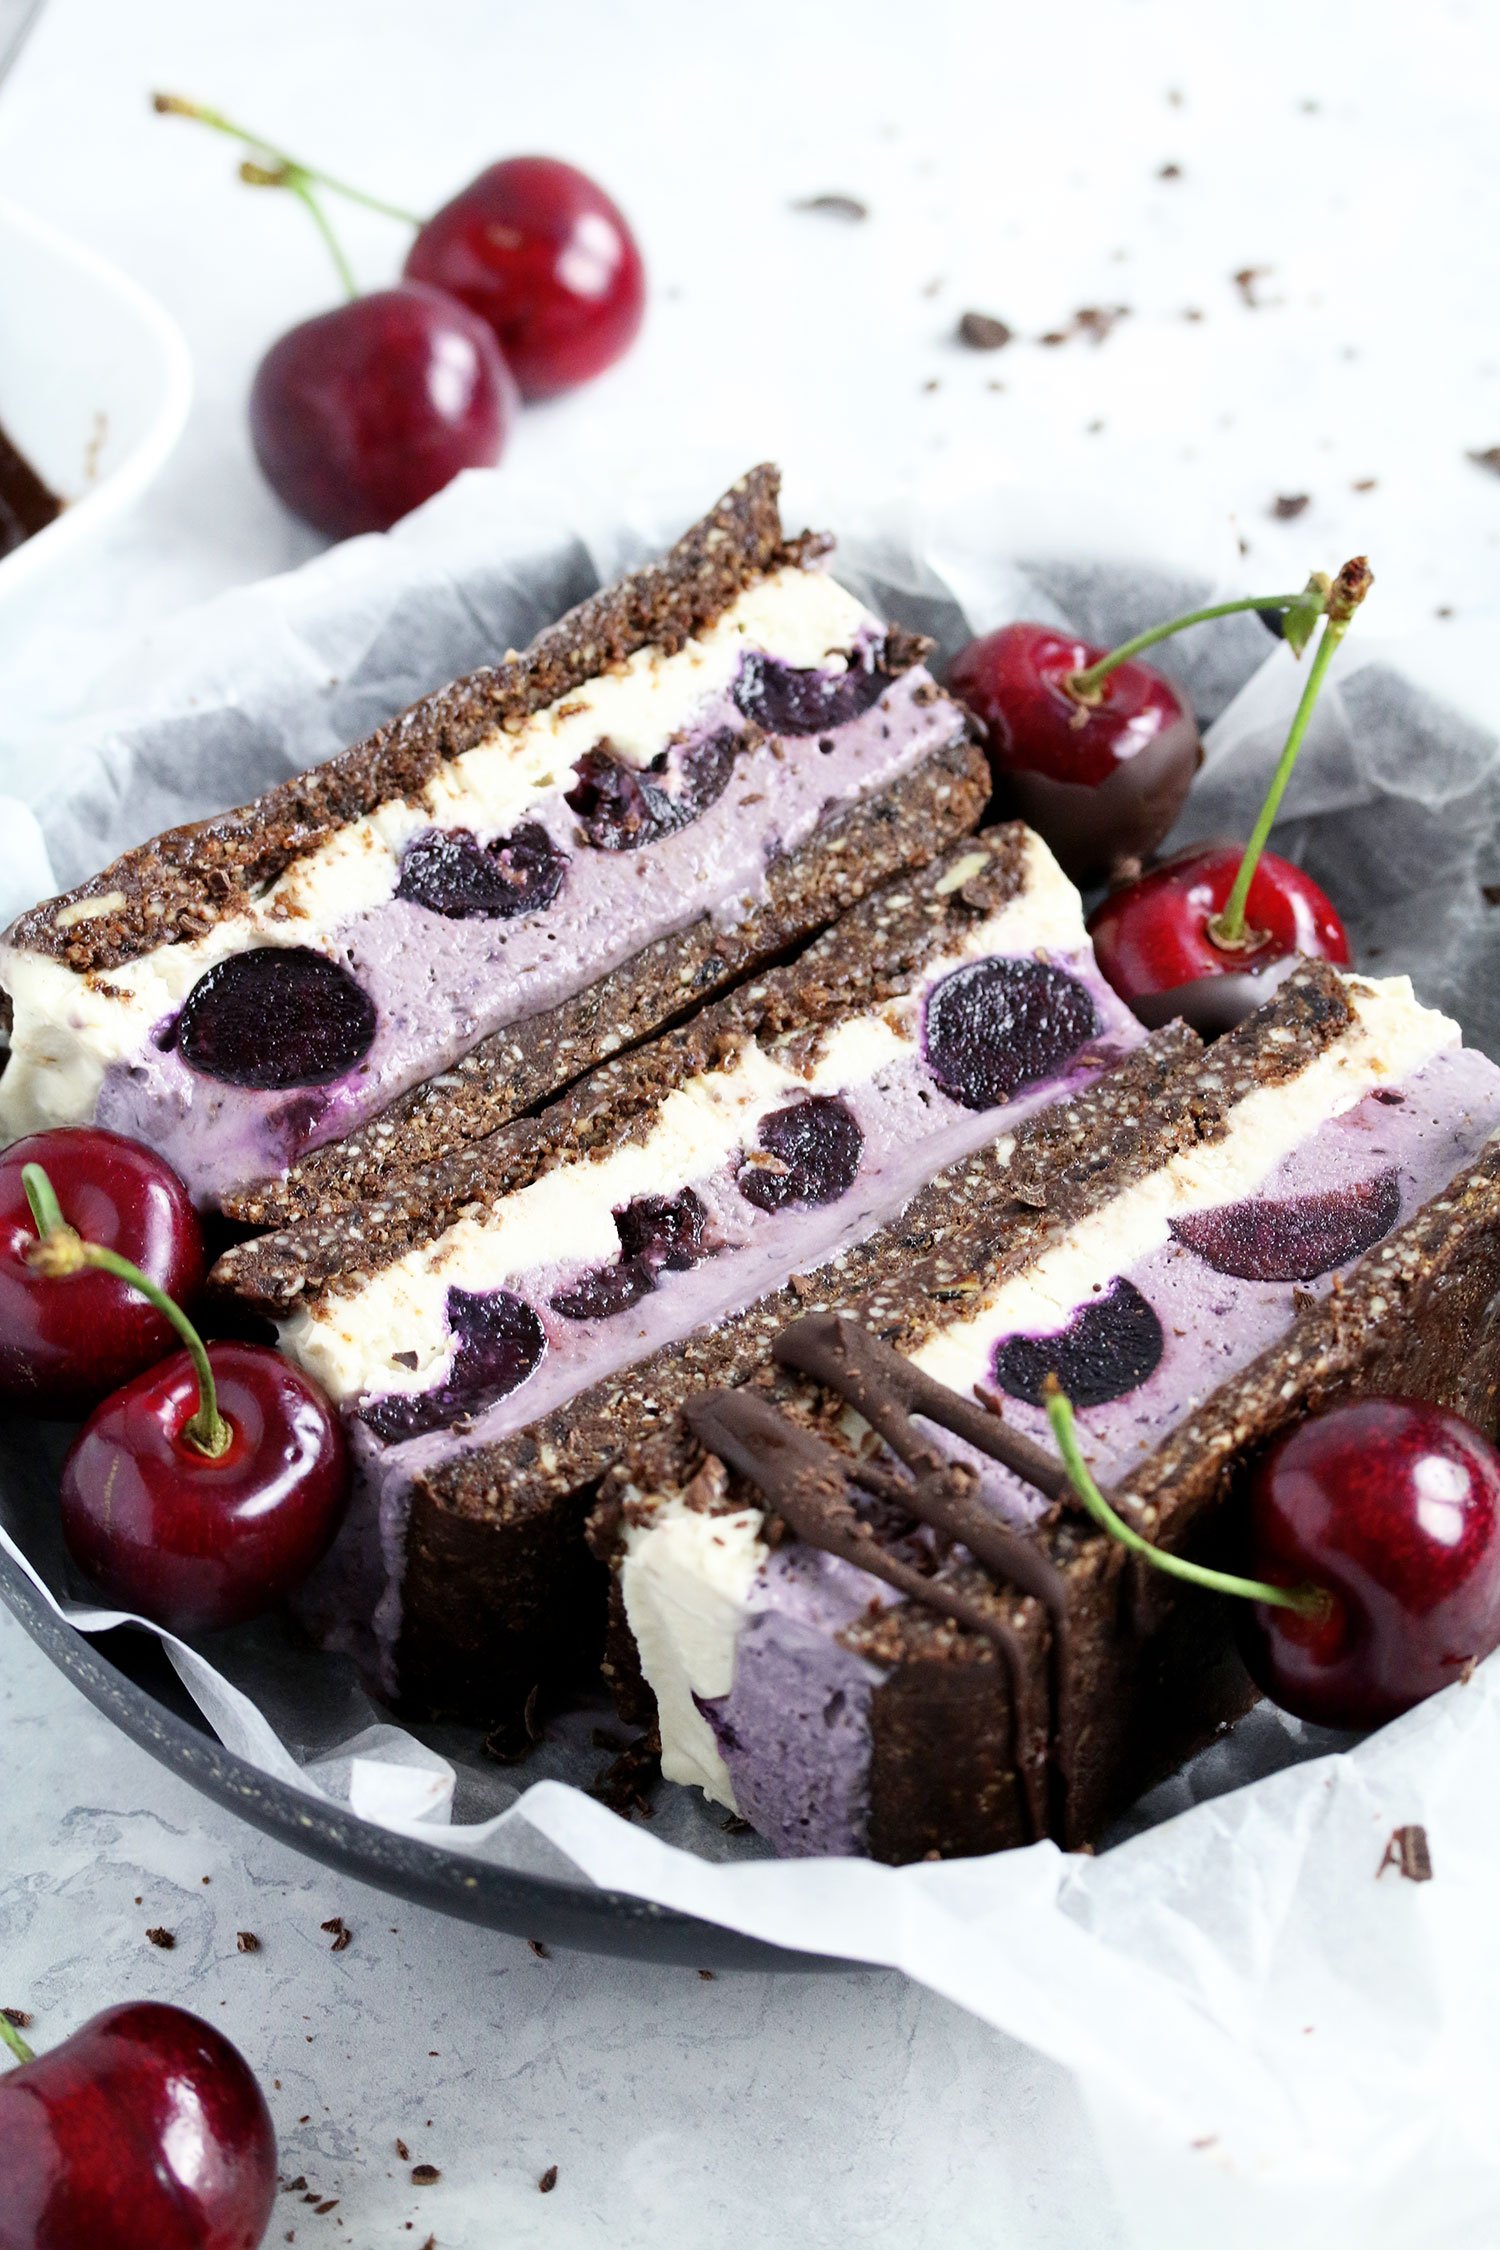 Cherry Chocolate Ice Cream Sandwiches Vegan And Gluten Free Nadia S